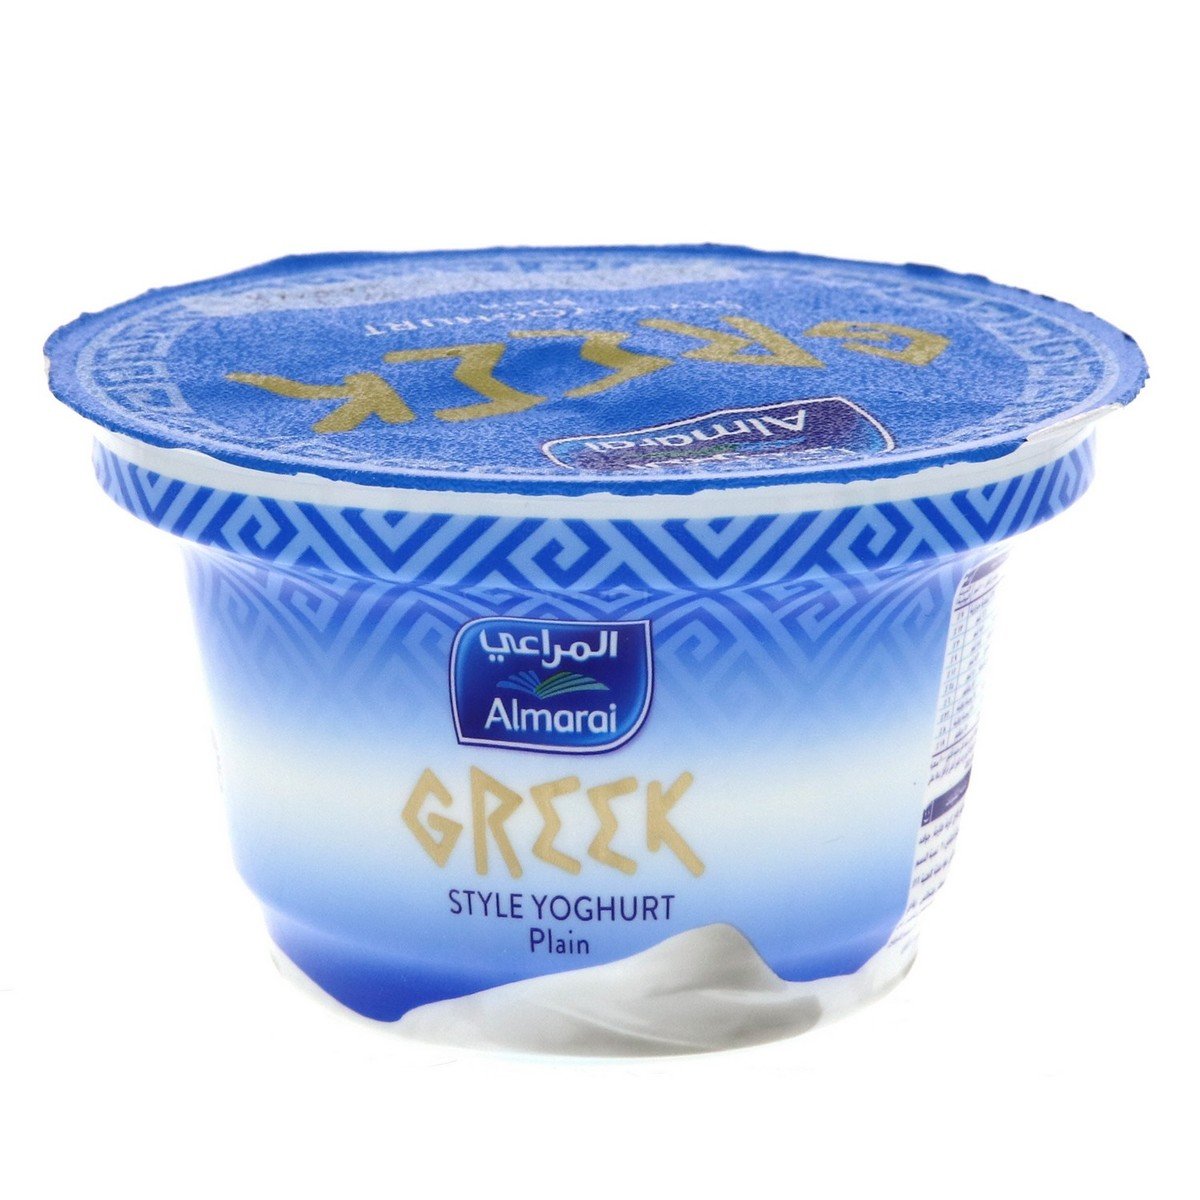 اشتري قم بشراء المراعي زبادي يوناني سادة 150جم Online at Best Price من الموقع - من لولو هايبر ماركت Plain Yoghurt في السعودية